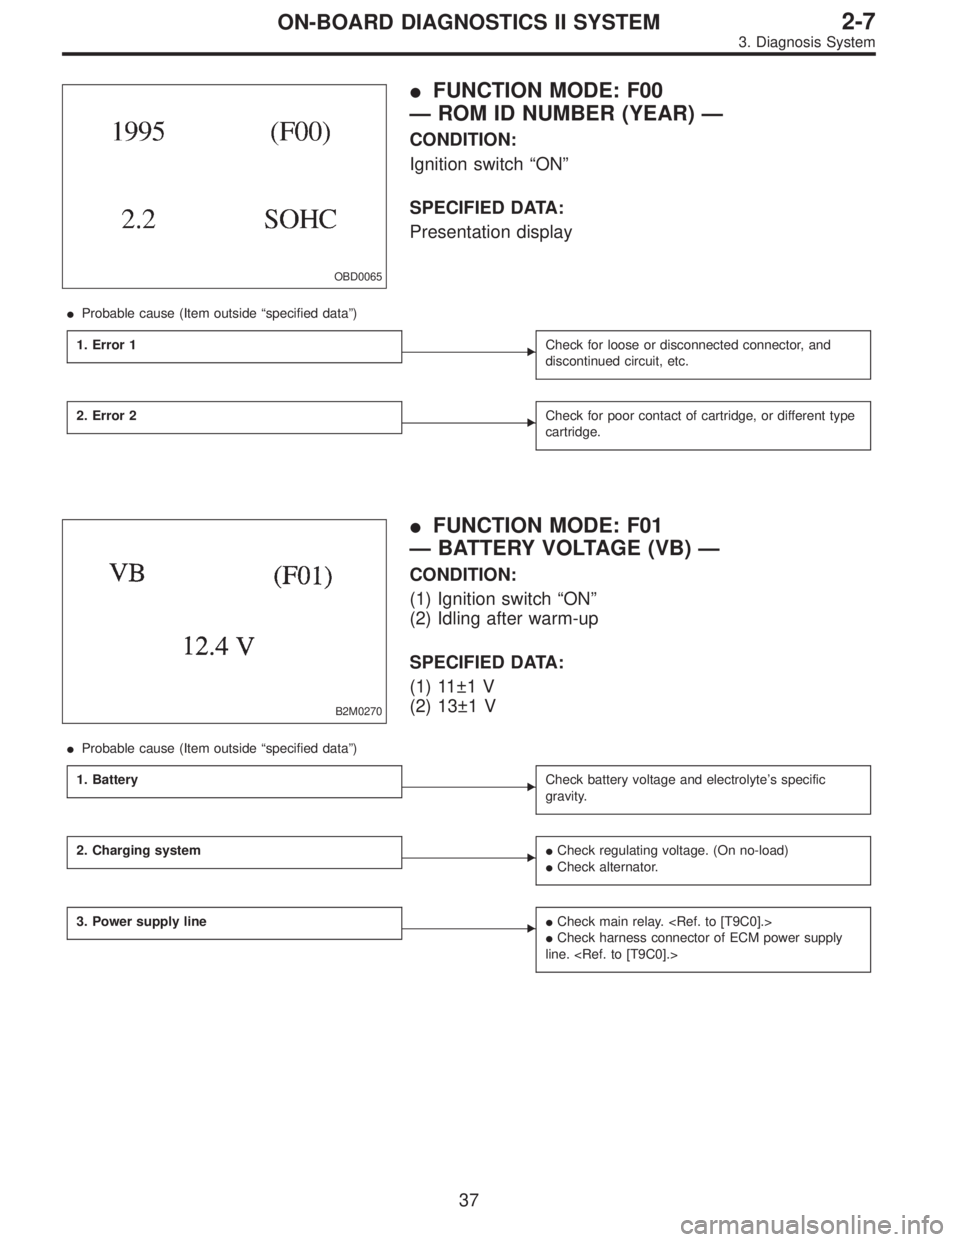 SUBARU LEGACY 1995  Service Repair Manual OBD0065
FUNCTION MODE: F00
— ROM ID NUMBER (YEAR) —
CONDITION:
Ignition switch“ON”
SPECIFIED DATA:
Presentation display
Probable cause (Item outside“specified data”)
1. Error 1
Check fo